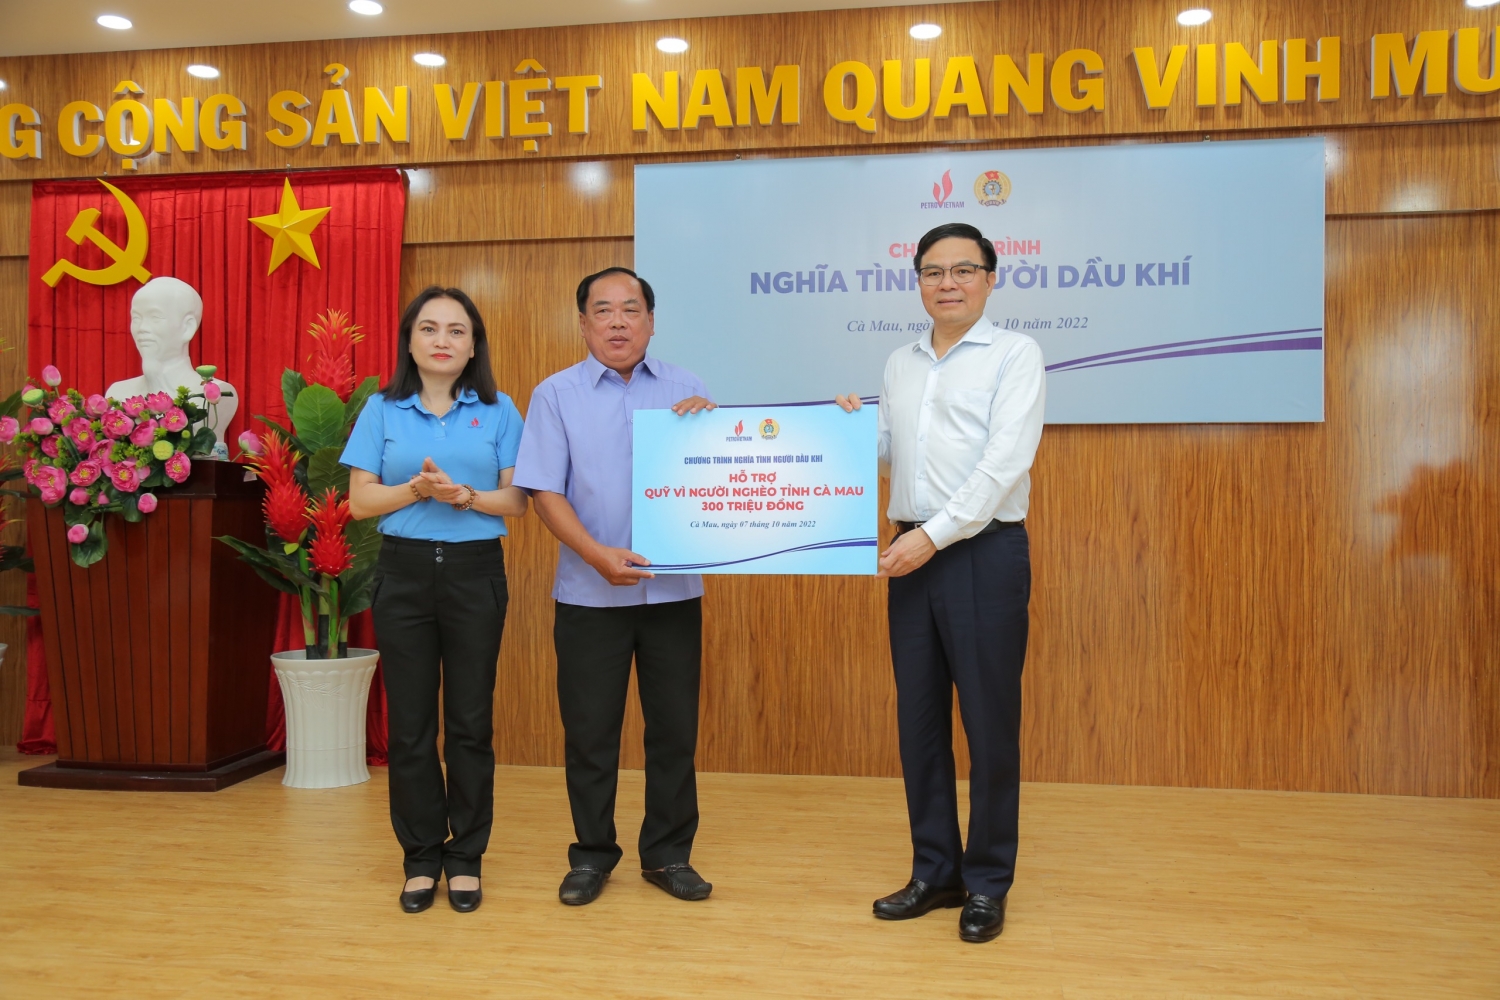 Tổng Giám đốc Petrovietnam Lê Mạnh Hùng và Chủ tịch Công đoàn Dầu khí Việt Nam Nghiêm Thùy Lan trao biểu trưng 300 triệu đồng hỗ trợ Quỹ Vì người nghèo tỉnh Cà Mau.